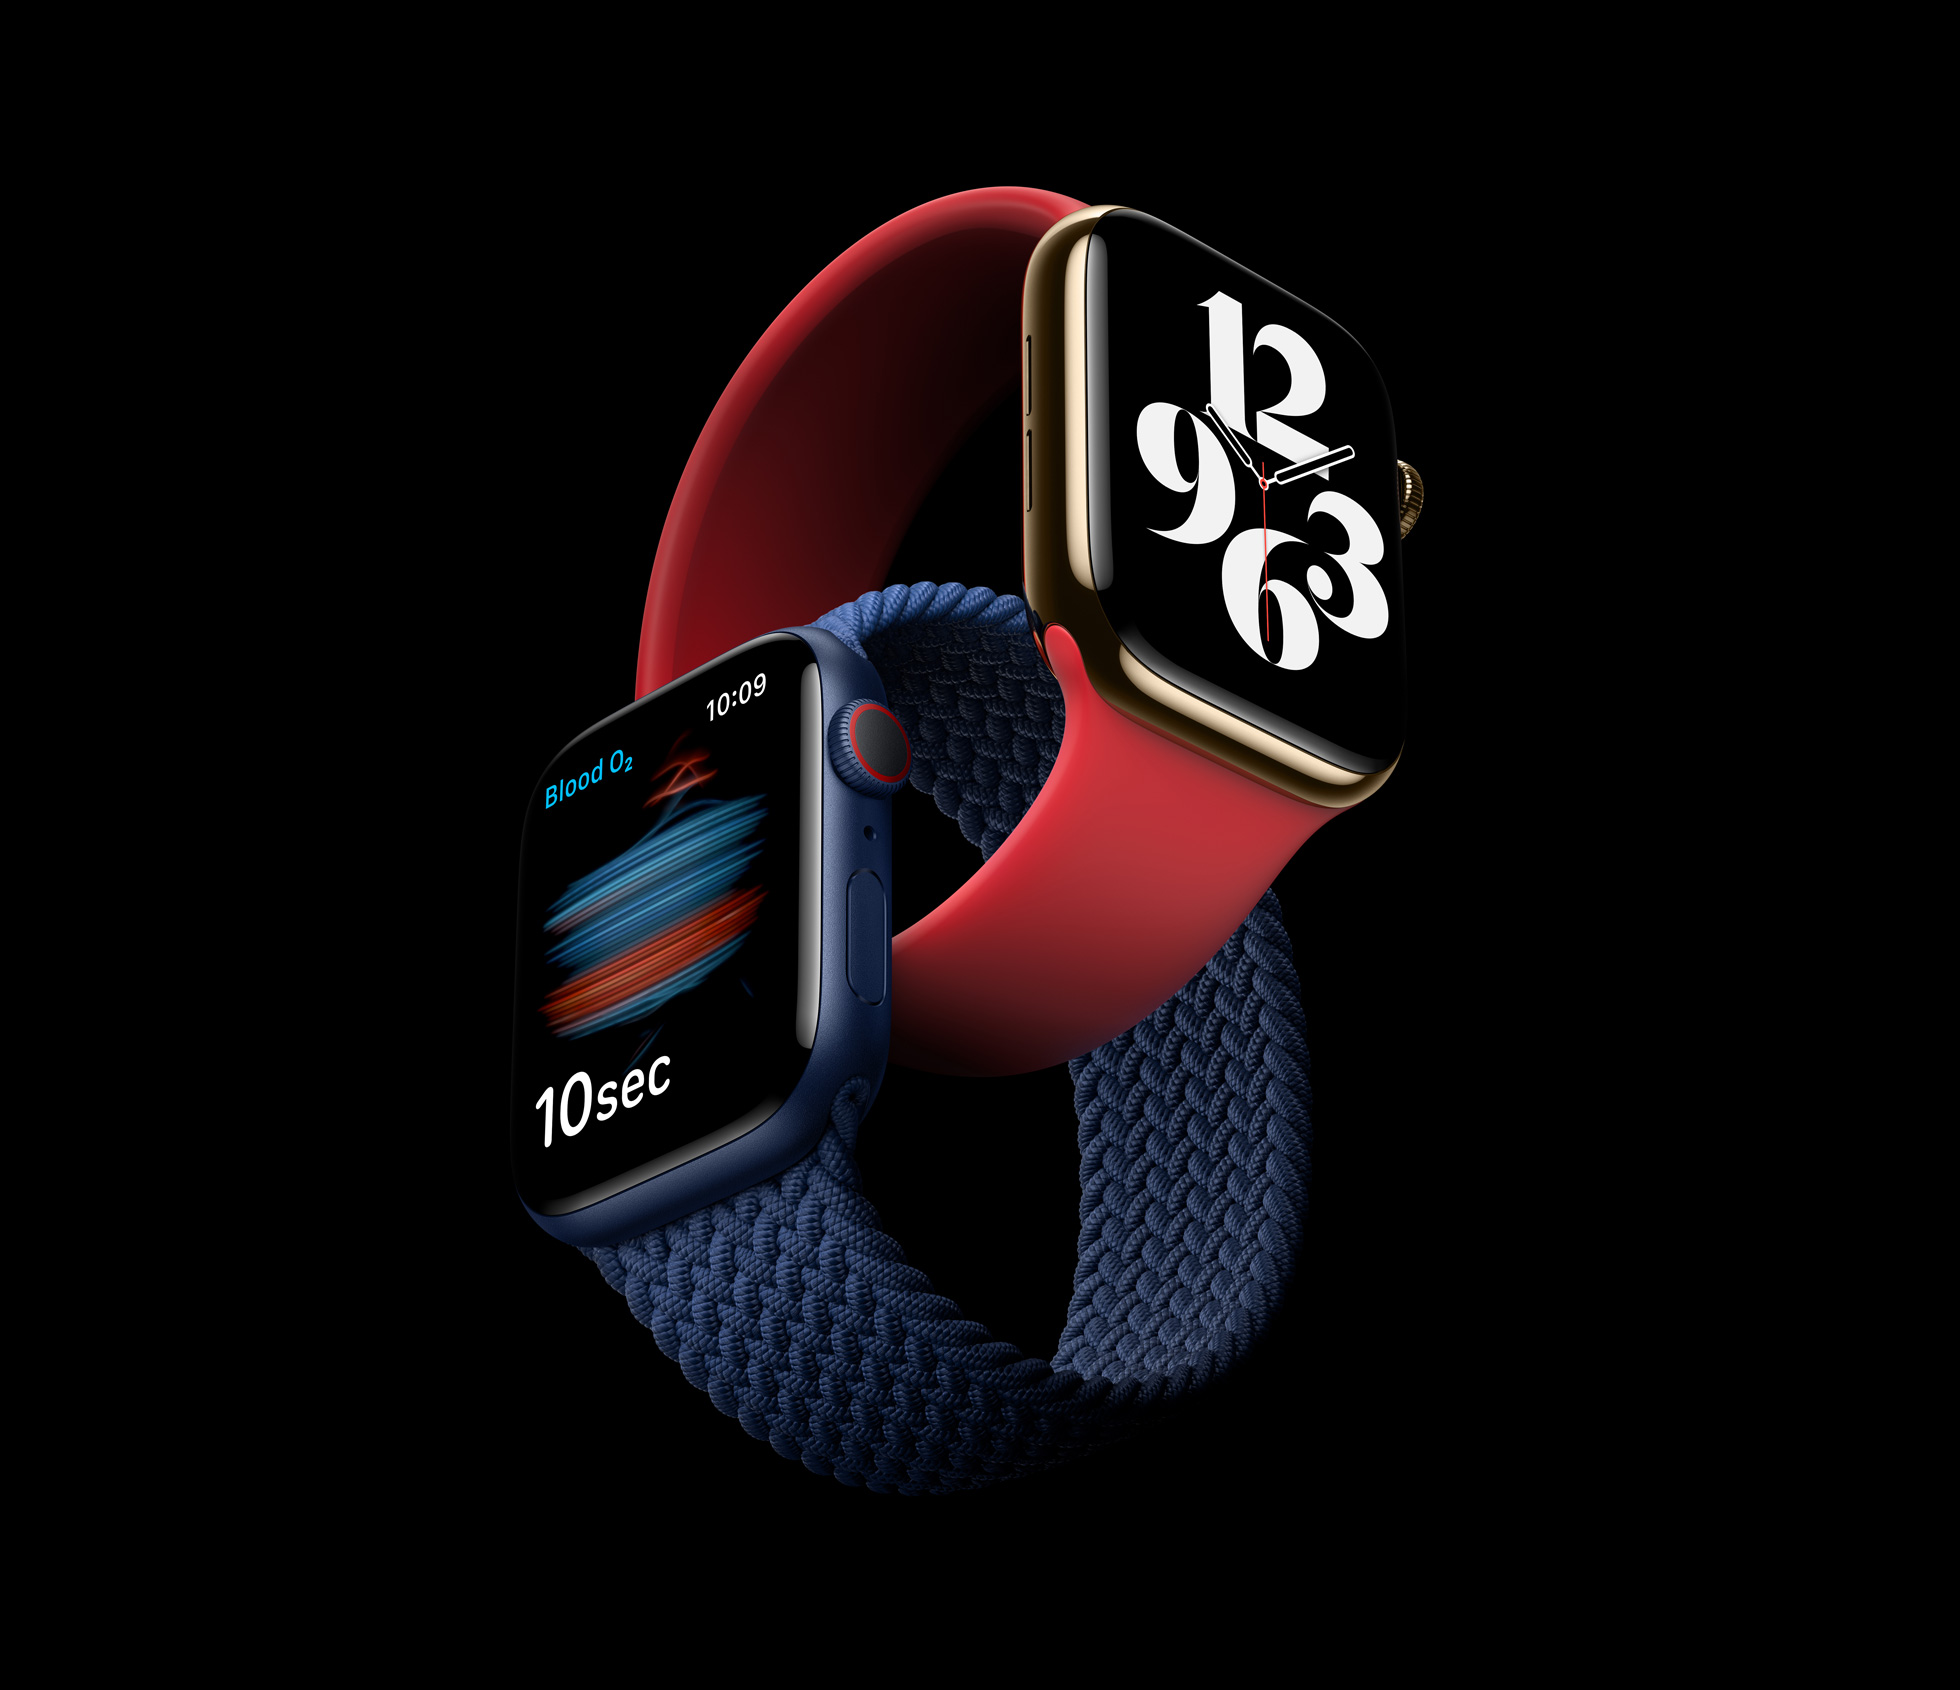 Apple_delivers-apple-watch-series-6_09152020.jpg (283 KB)